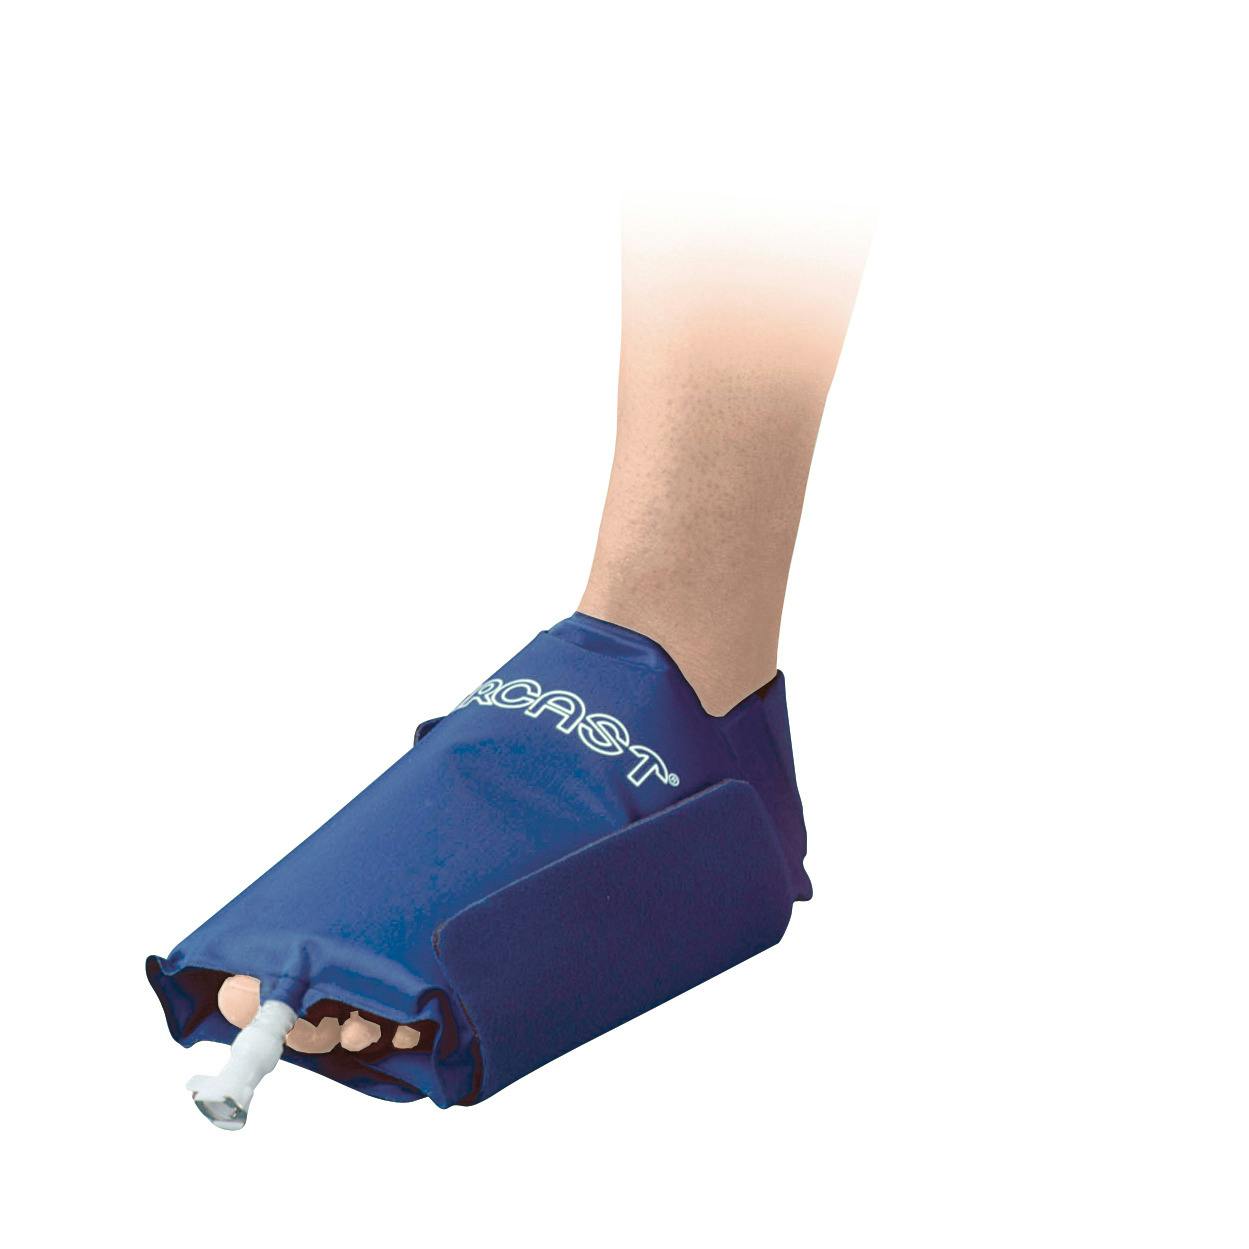 Produktbild AIRCAST® Cryo/Cuff™-Fußbandage, Kälte-Therapie-System zur Reduktion von Schwellungen und Schmerzen